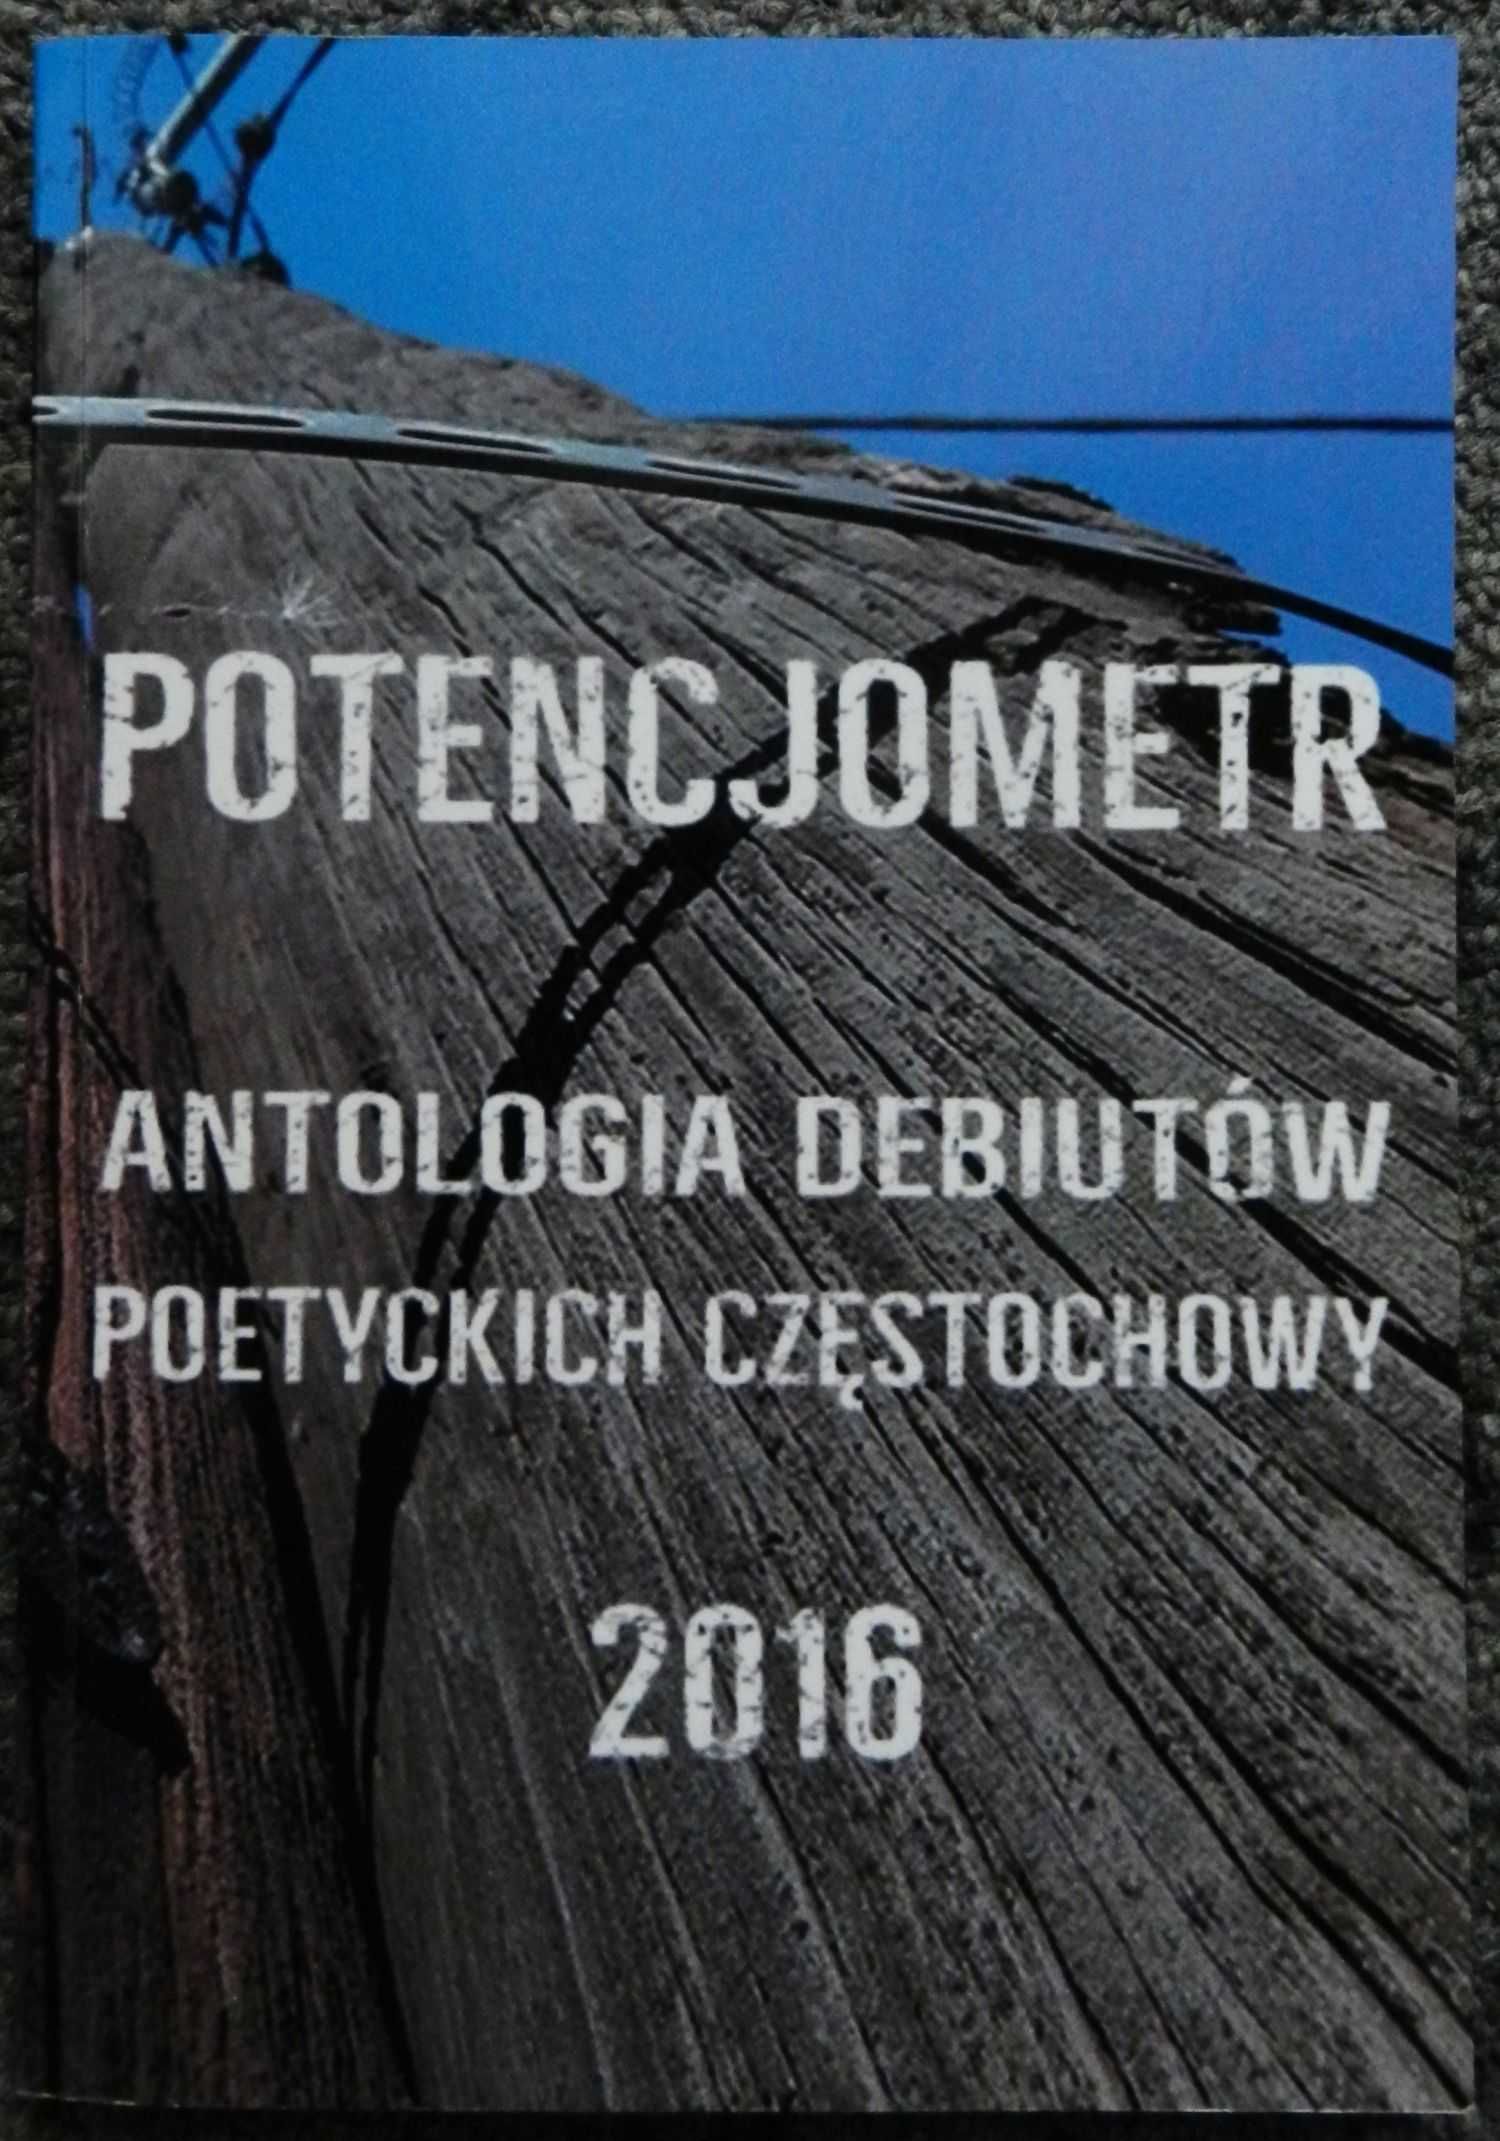 Potencjometr - antologia debiutów poetyckich Częstochowy 2016